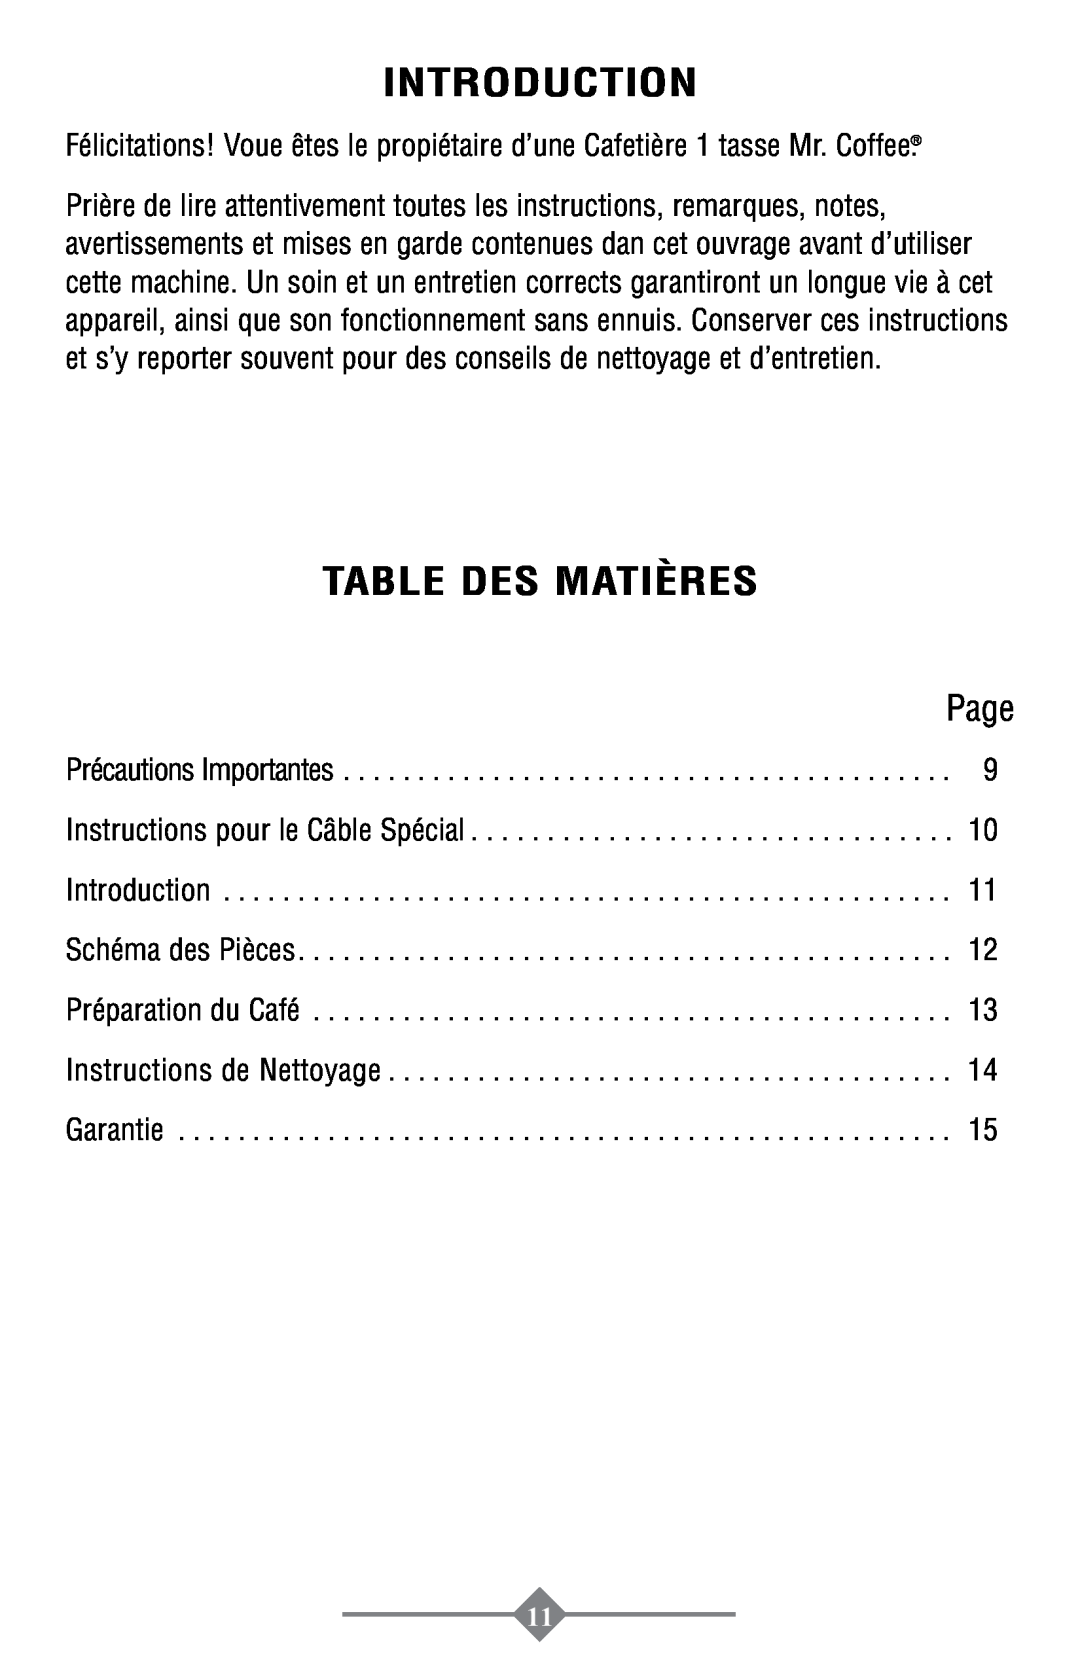 Mr. Coffee PTC13-100 Table Des Matières, Introduction, Page, Précautions Importantes Instructions pour le Câble Spécial 